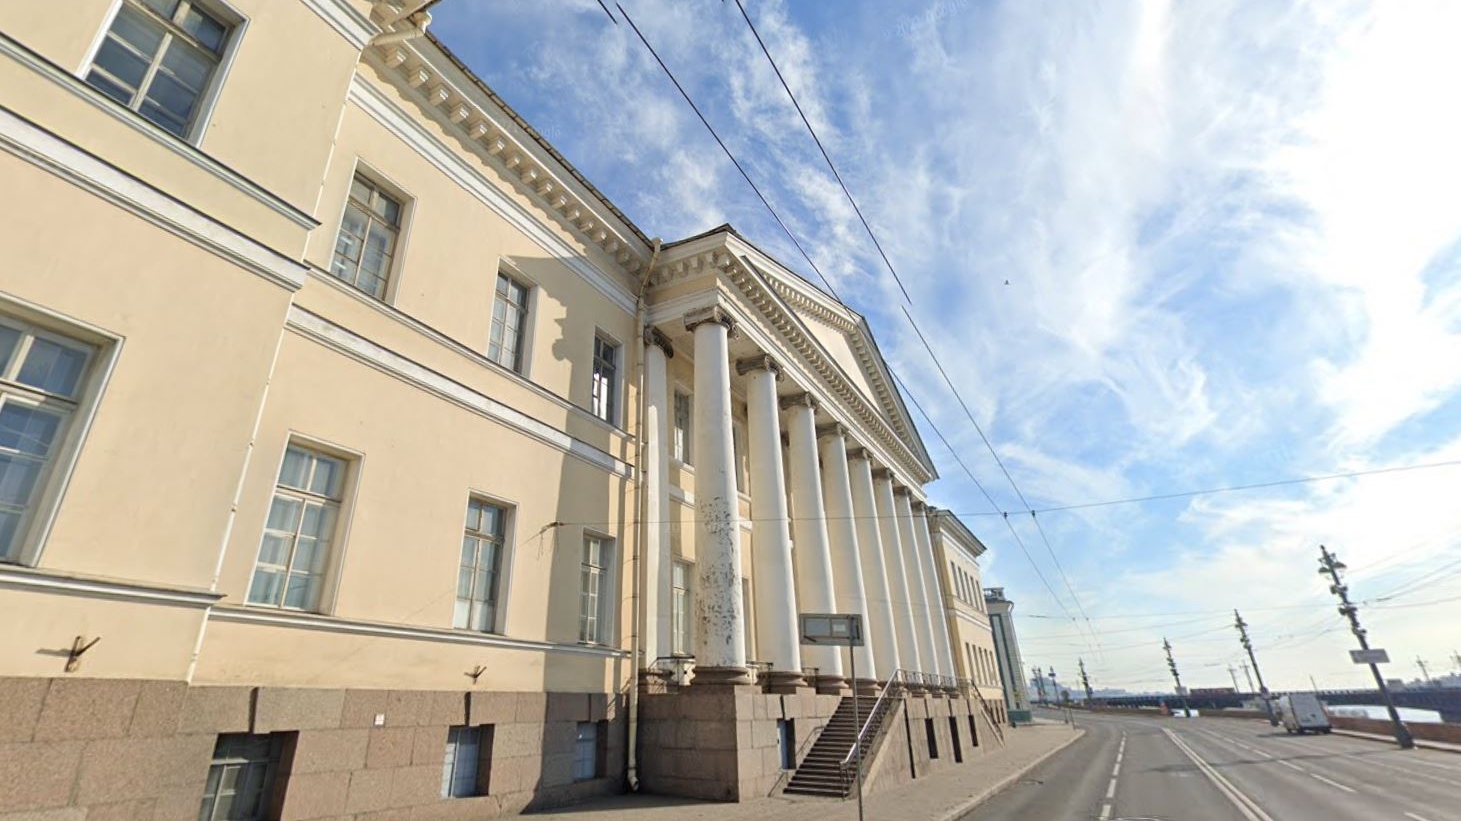 Петербургское отделение РАН разместится на Университетской набережной вместо научного центра